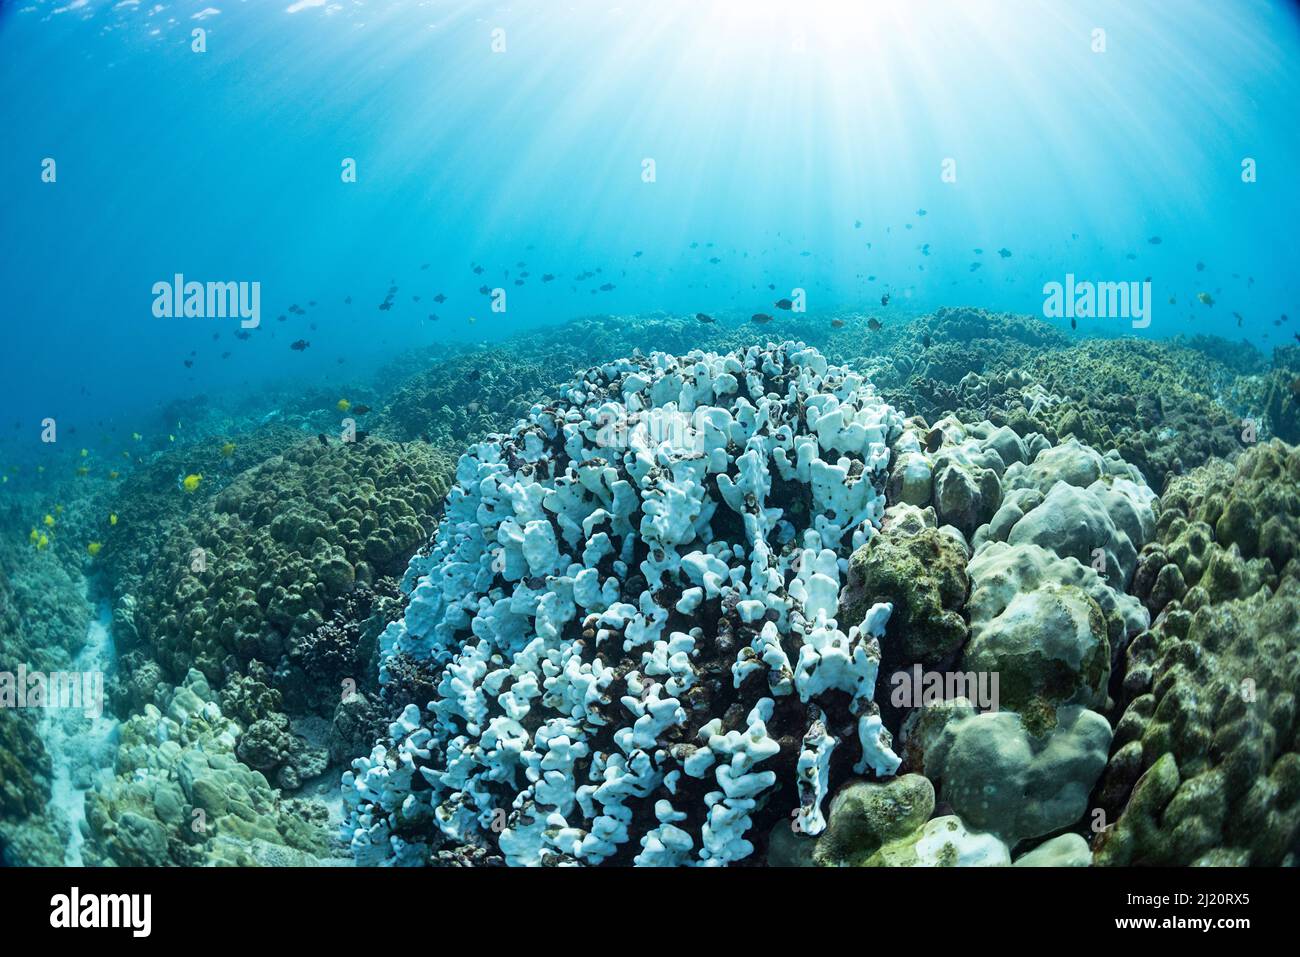 Barriera corallina con corallo duro (Porites sp), sbiancato a causa delle alte temperature dell'acqua durante l'evento El Nino. Pesci che nuotano sopra la barriera corallina. Kamakahonu, Kailua Ba Foto Stock